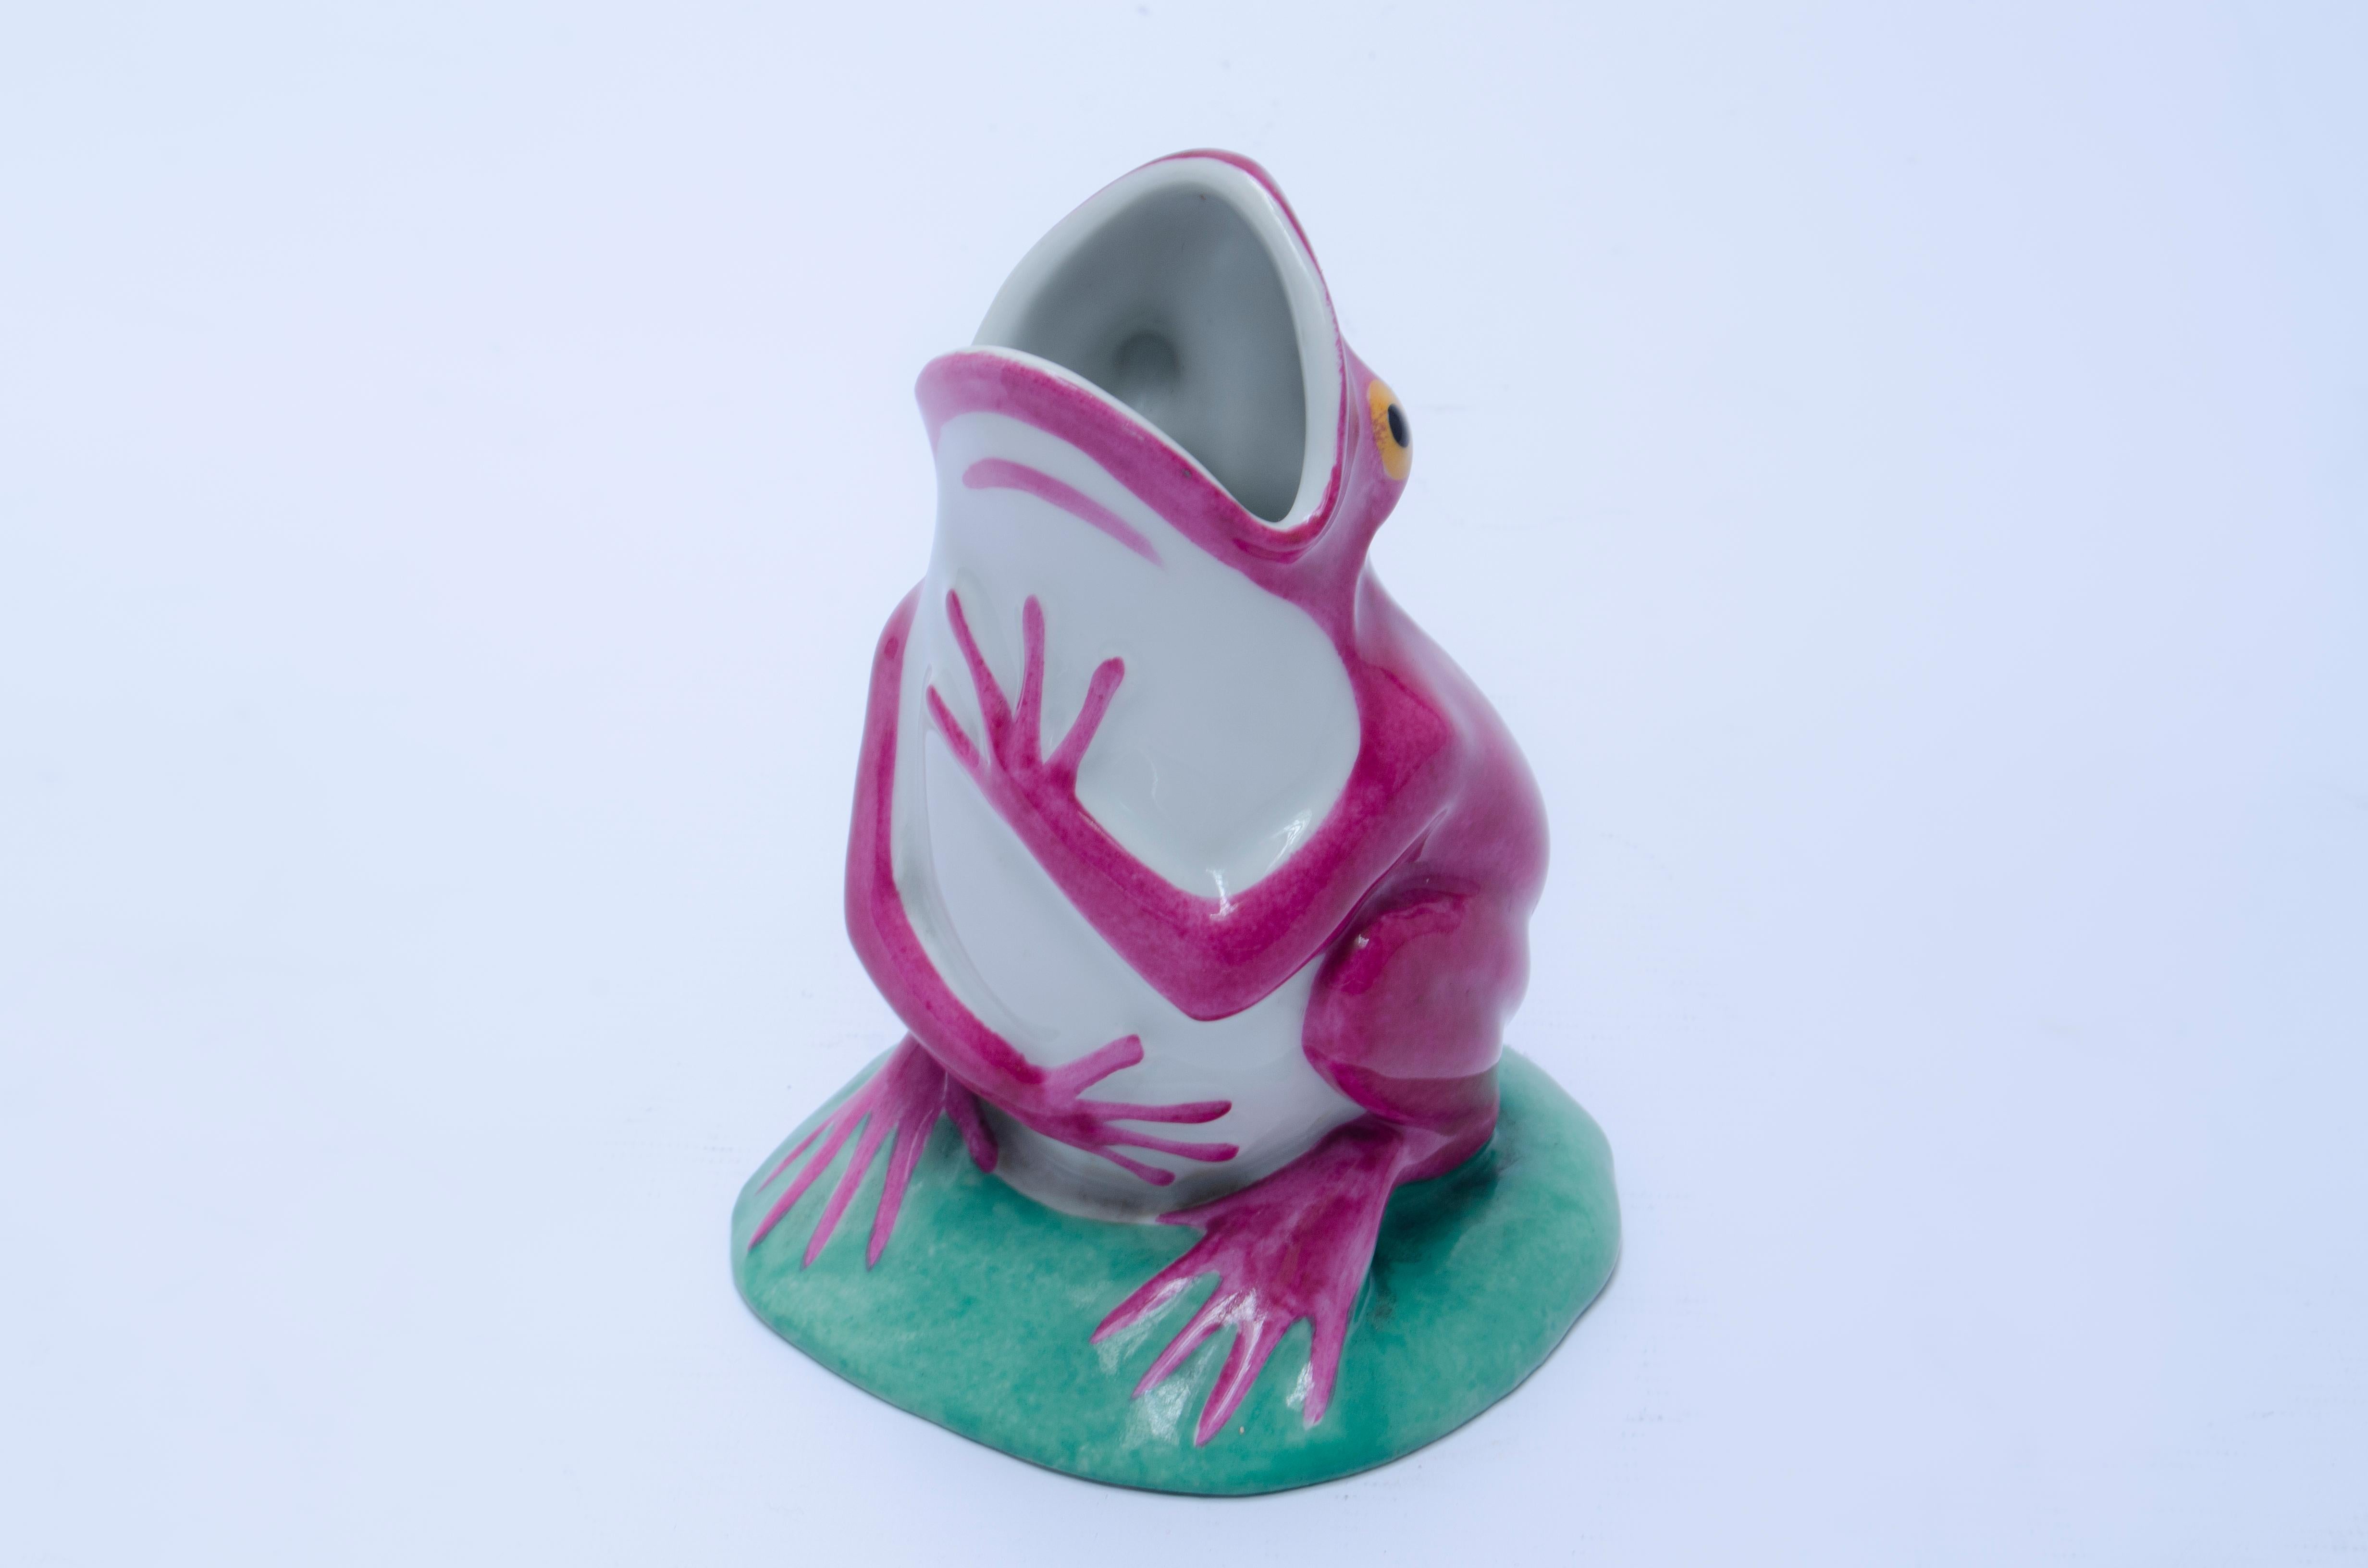 Frosch aus Keramik von Edouard Marcel Sandoz (1881-1971), hergestellt von Haviland.

Wapler, Jacques-Ph. (1999) 